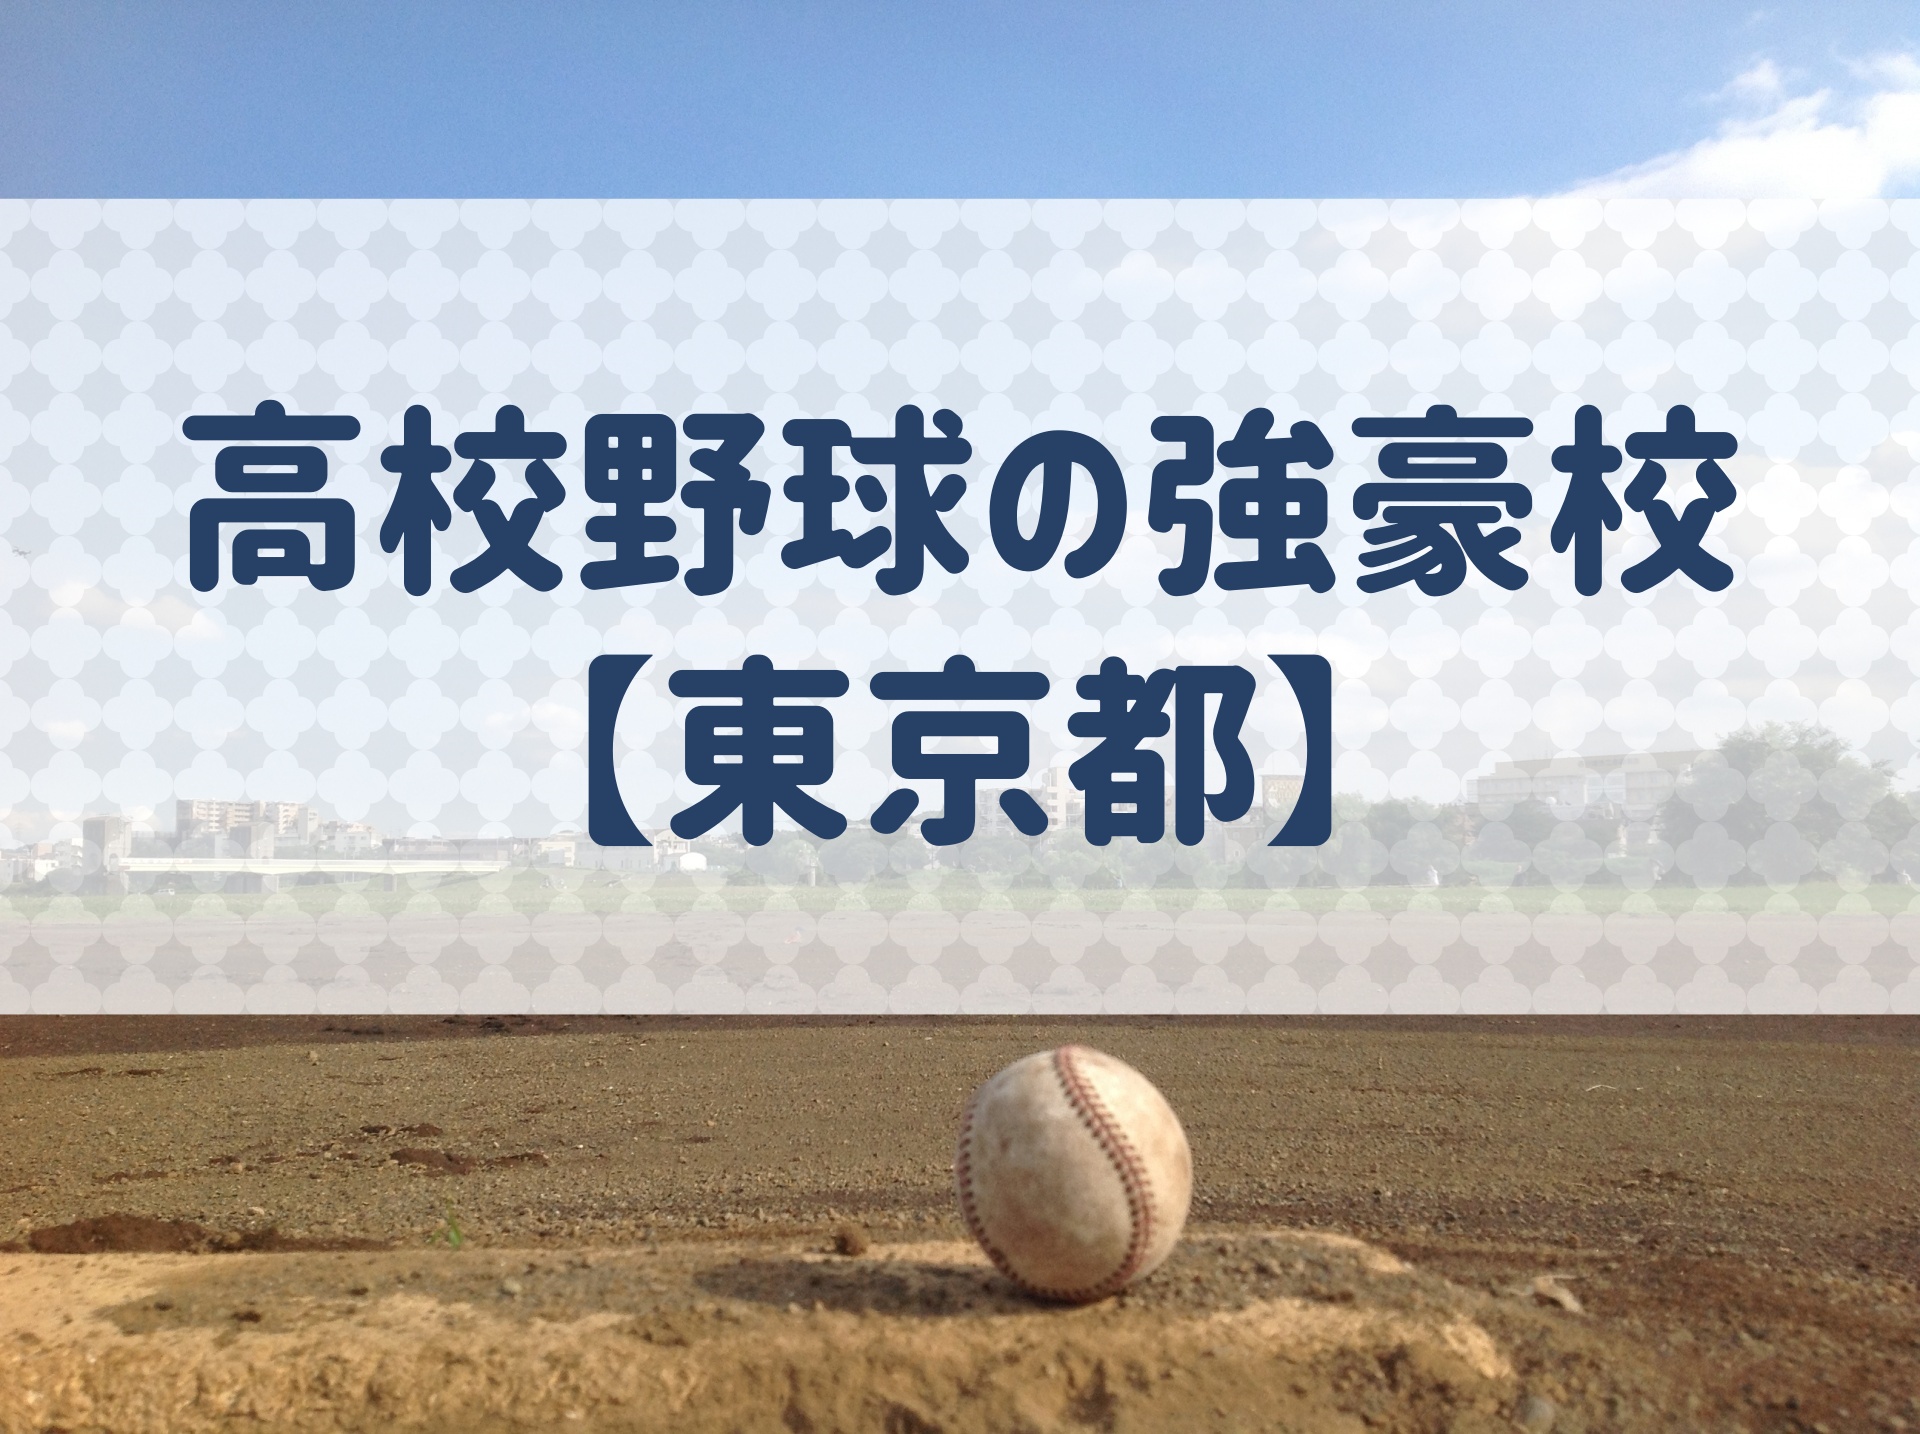 東京都 高校野球の強豪校 特徴と実績などを紹介 野球用語 Net